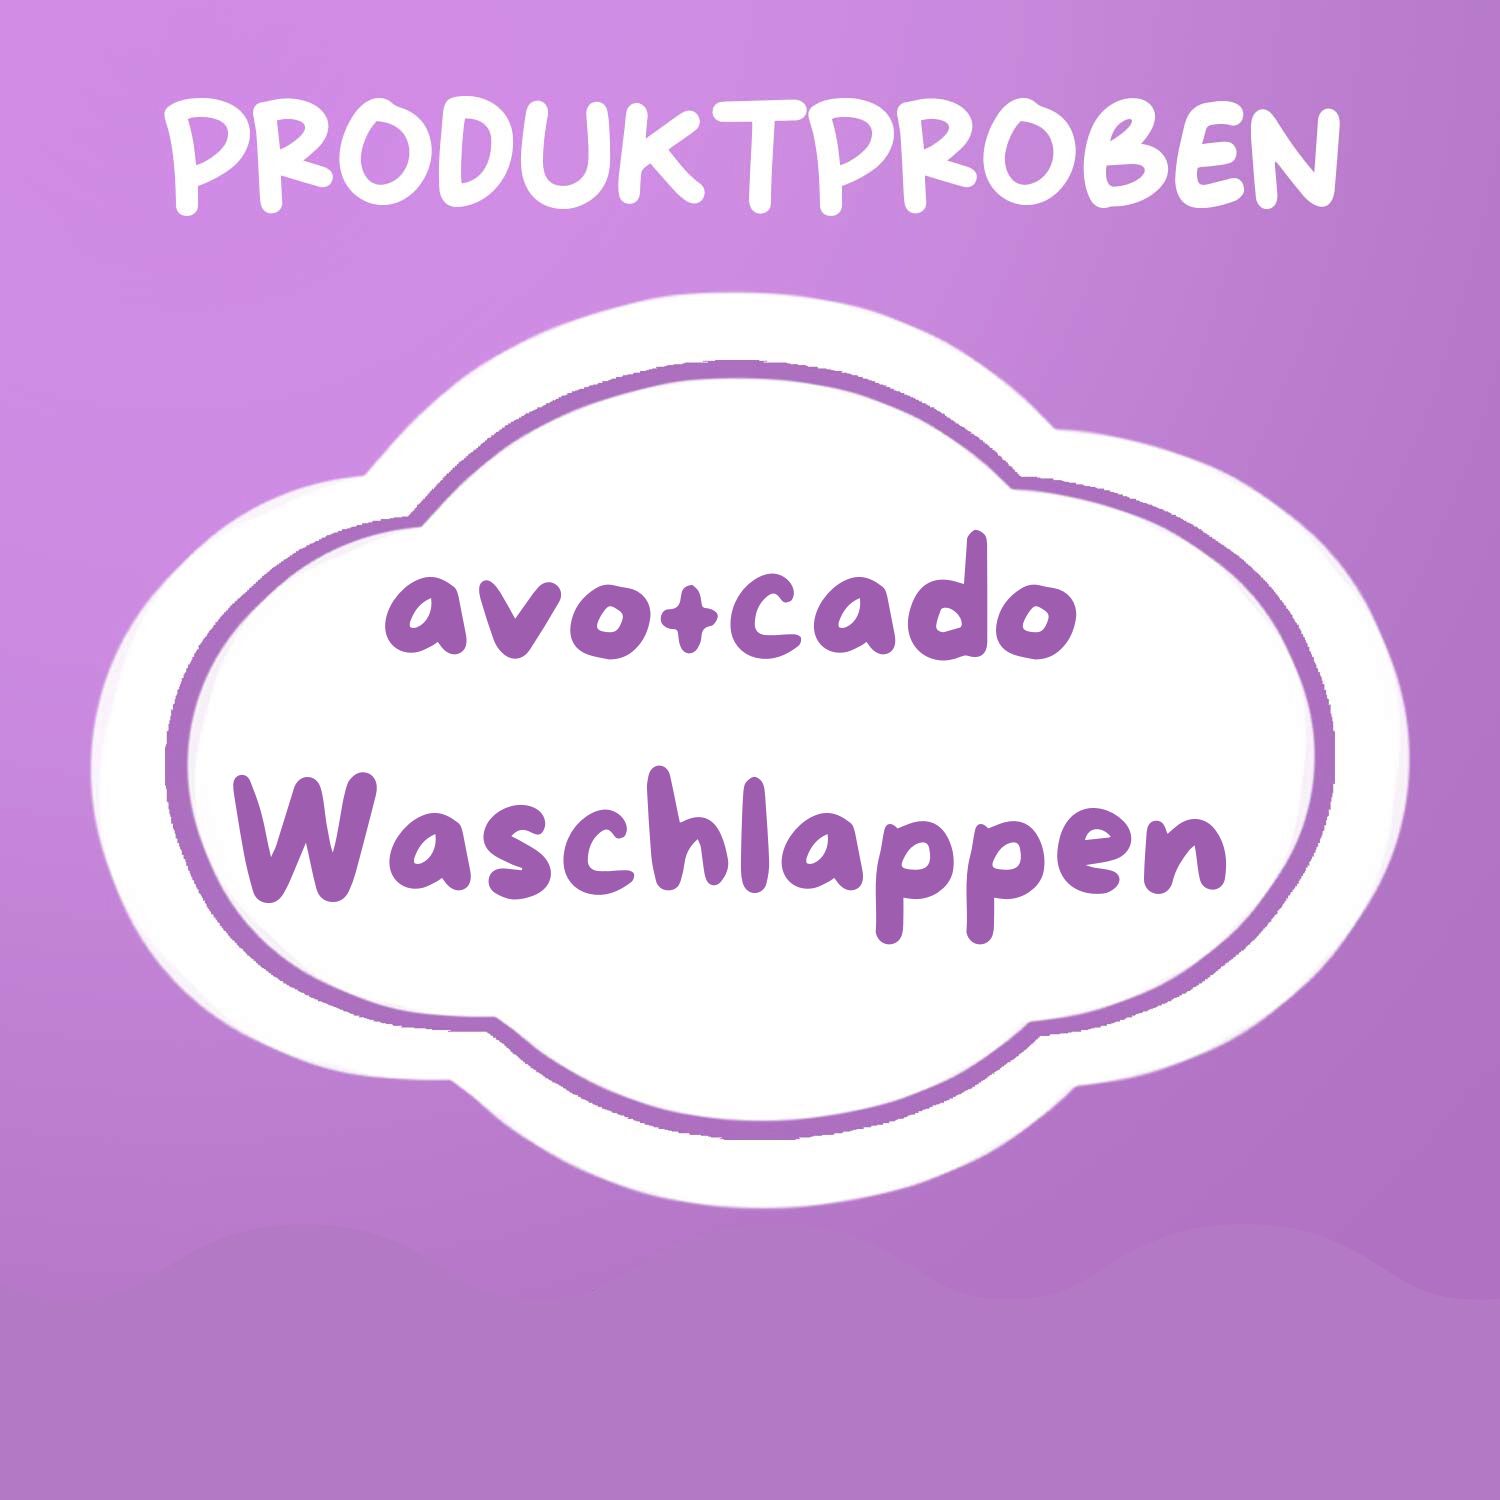 Produktprobe: avo+cado Waschlappen